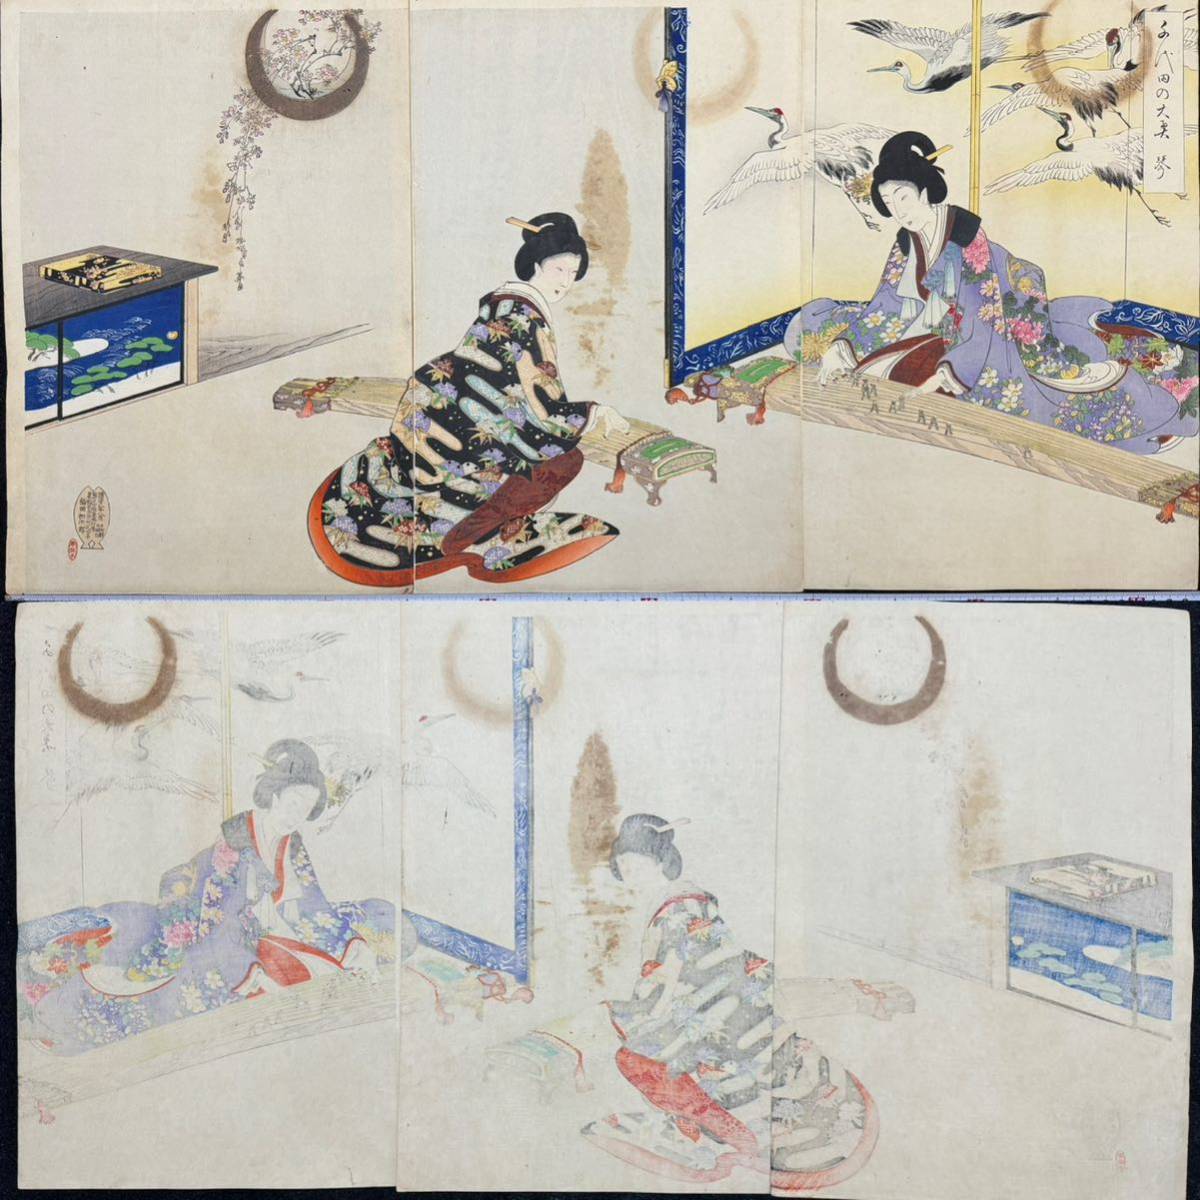 메이지시대/정작 요슈슈엔 치요다노 오오쿠 고토 정품 우키요에 목판화, 아름다운 여성의 초상화, 니시키에, 큰 사이즈, 삼부작, 그림, 우키요에, 인쇄물, 아름다운 여인의 초상